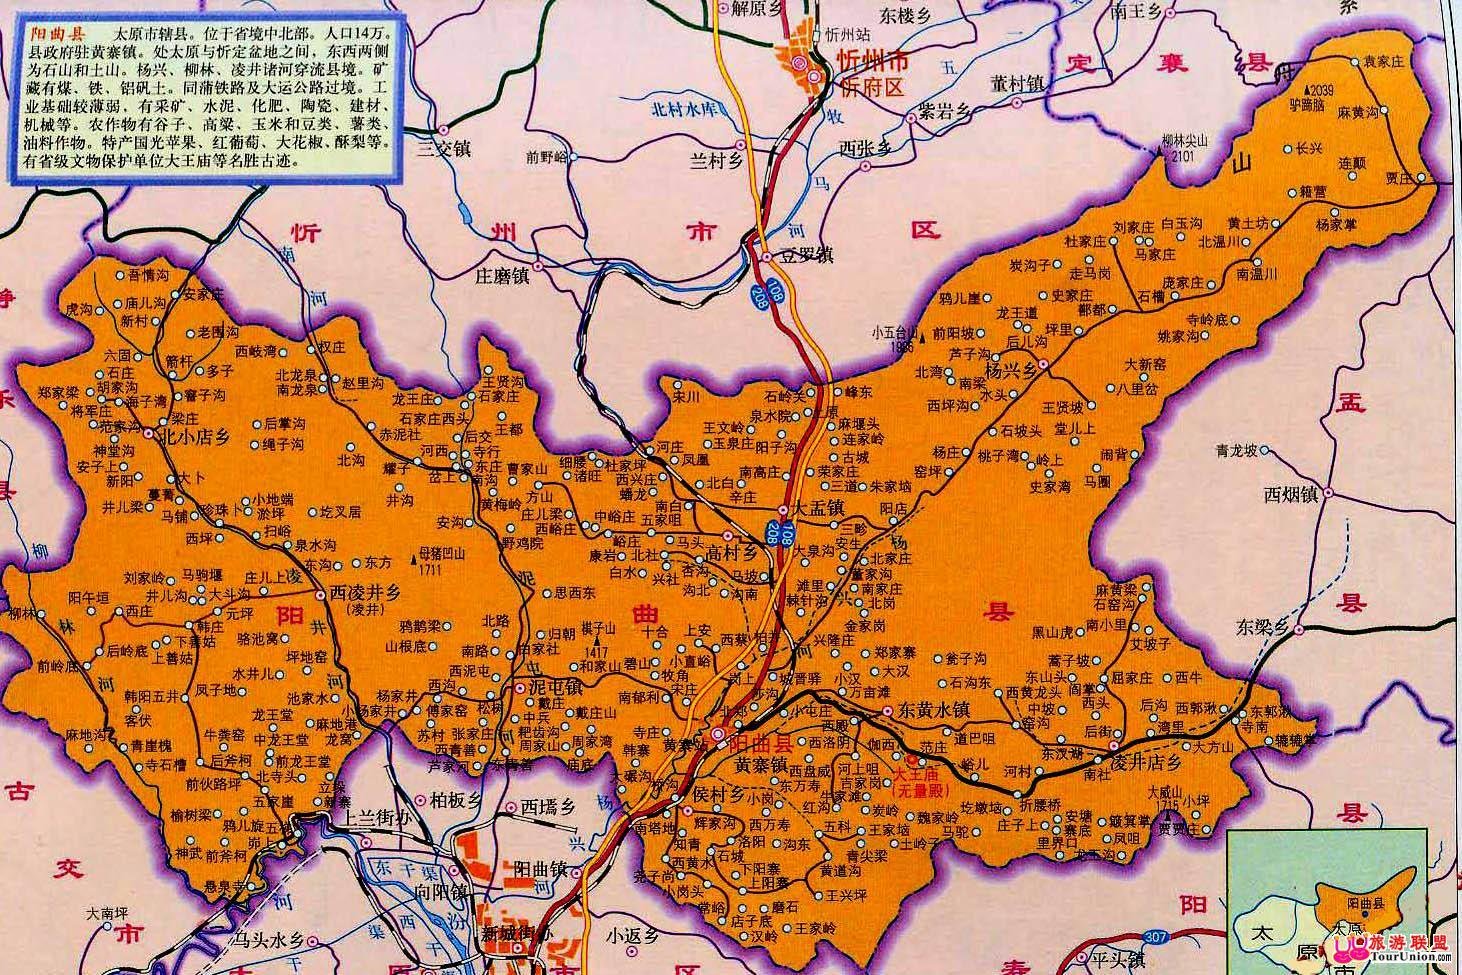 阳曲县属于山西省太原市,地处与晋中盆地之地带.扼晋要冲,太原门户.